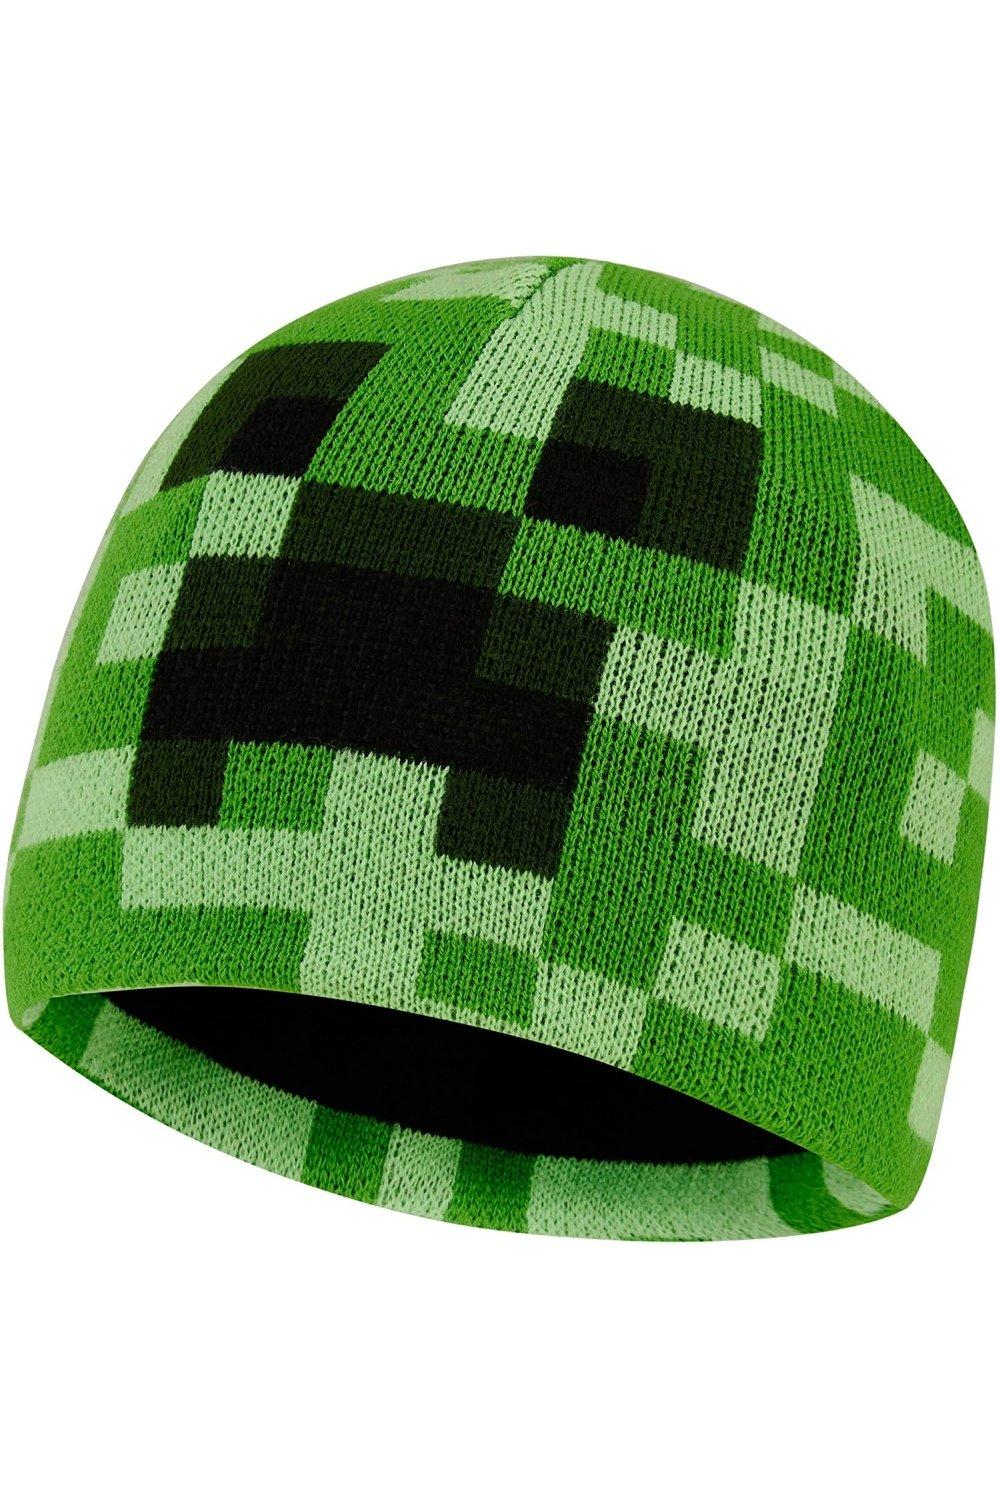 Шапка-бини Minecraft, зеленый вязаные шапки для женщин черная шапка бини зимняя мужская женская вязаная шапка для дам шапка бини однотонная шапка вязаная толстая шапка